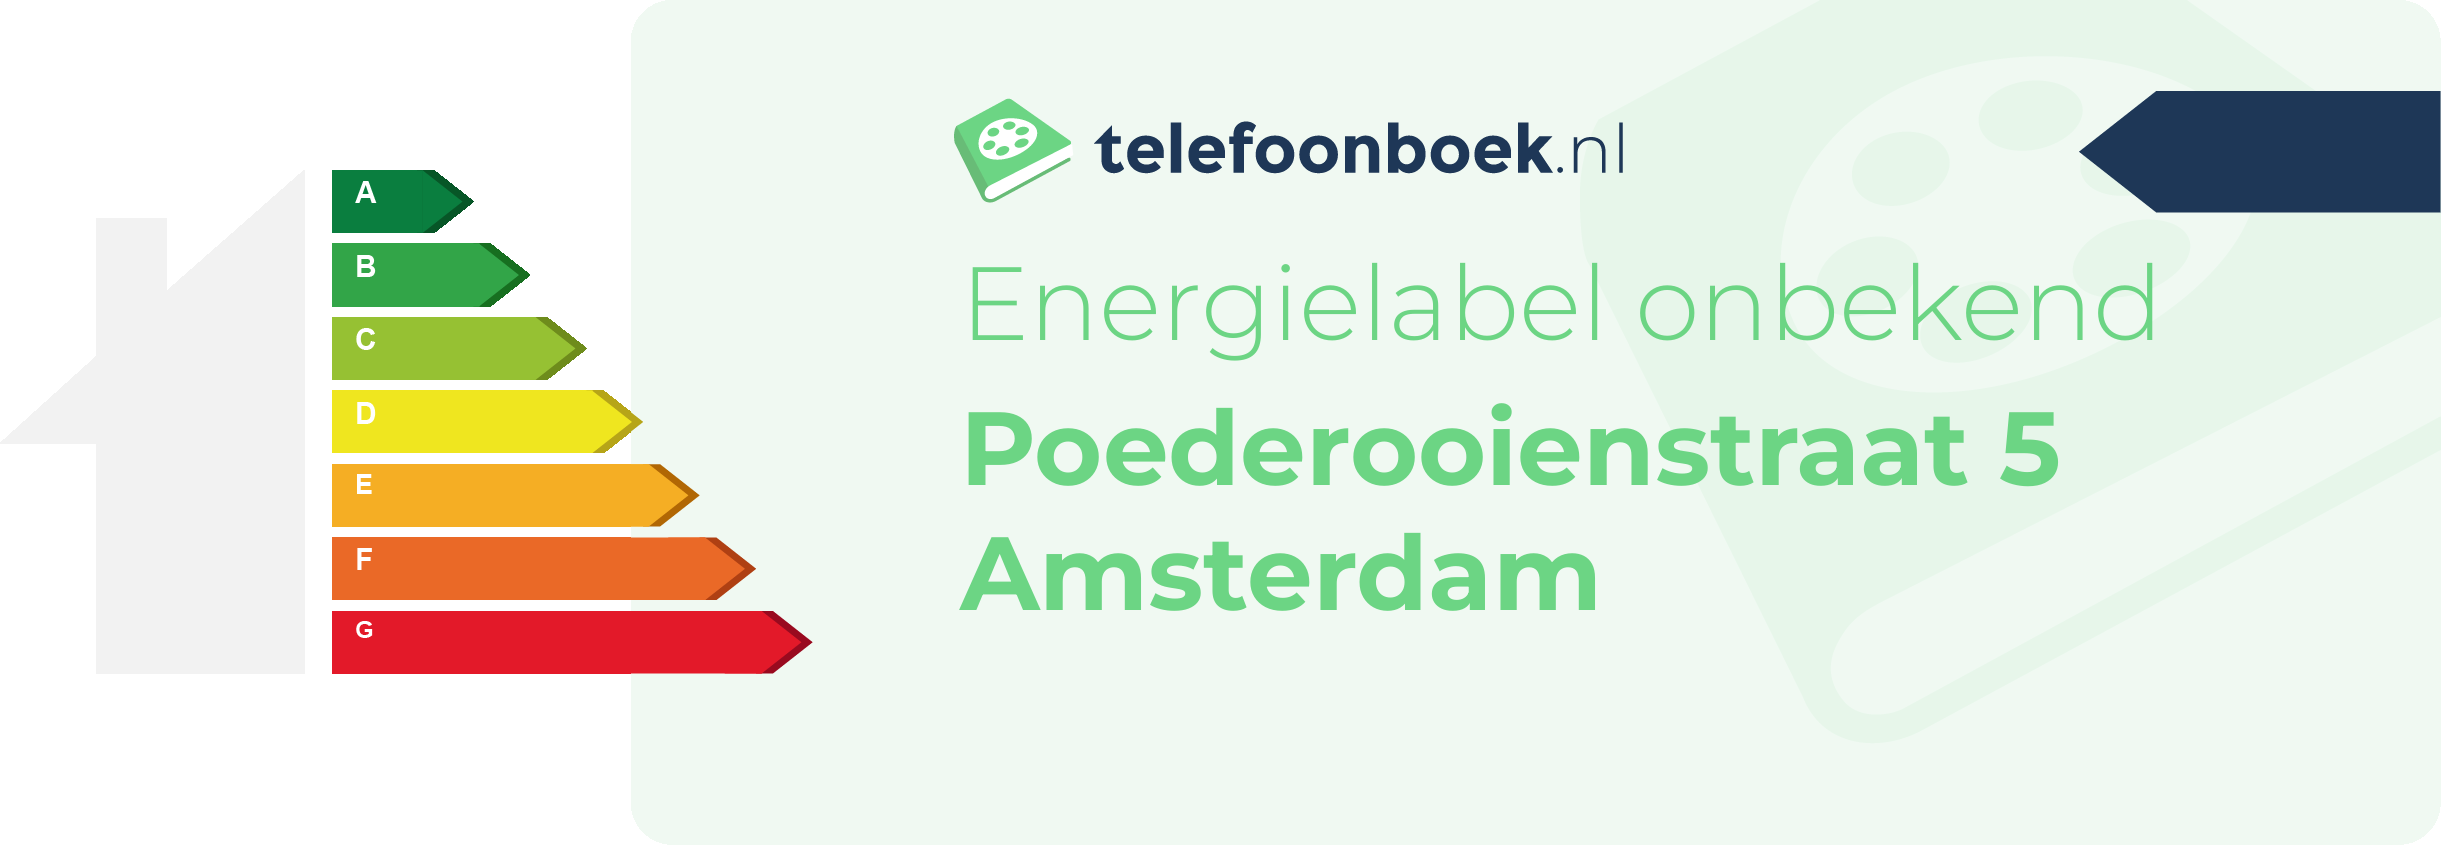 Energielabel Poederooienstraat 5 Amsterdam